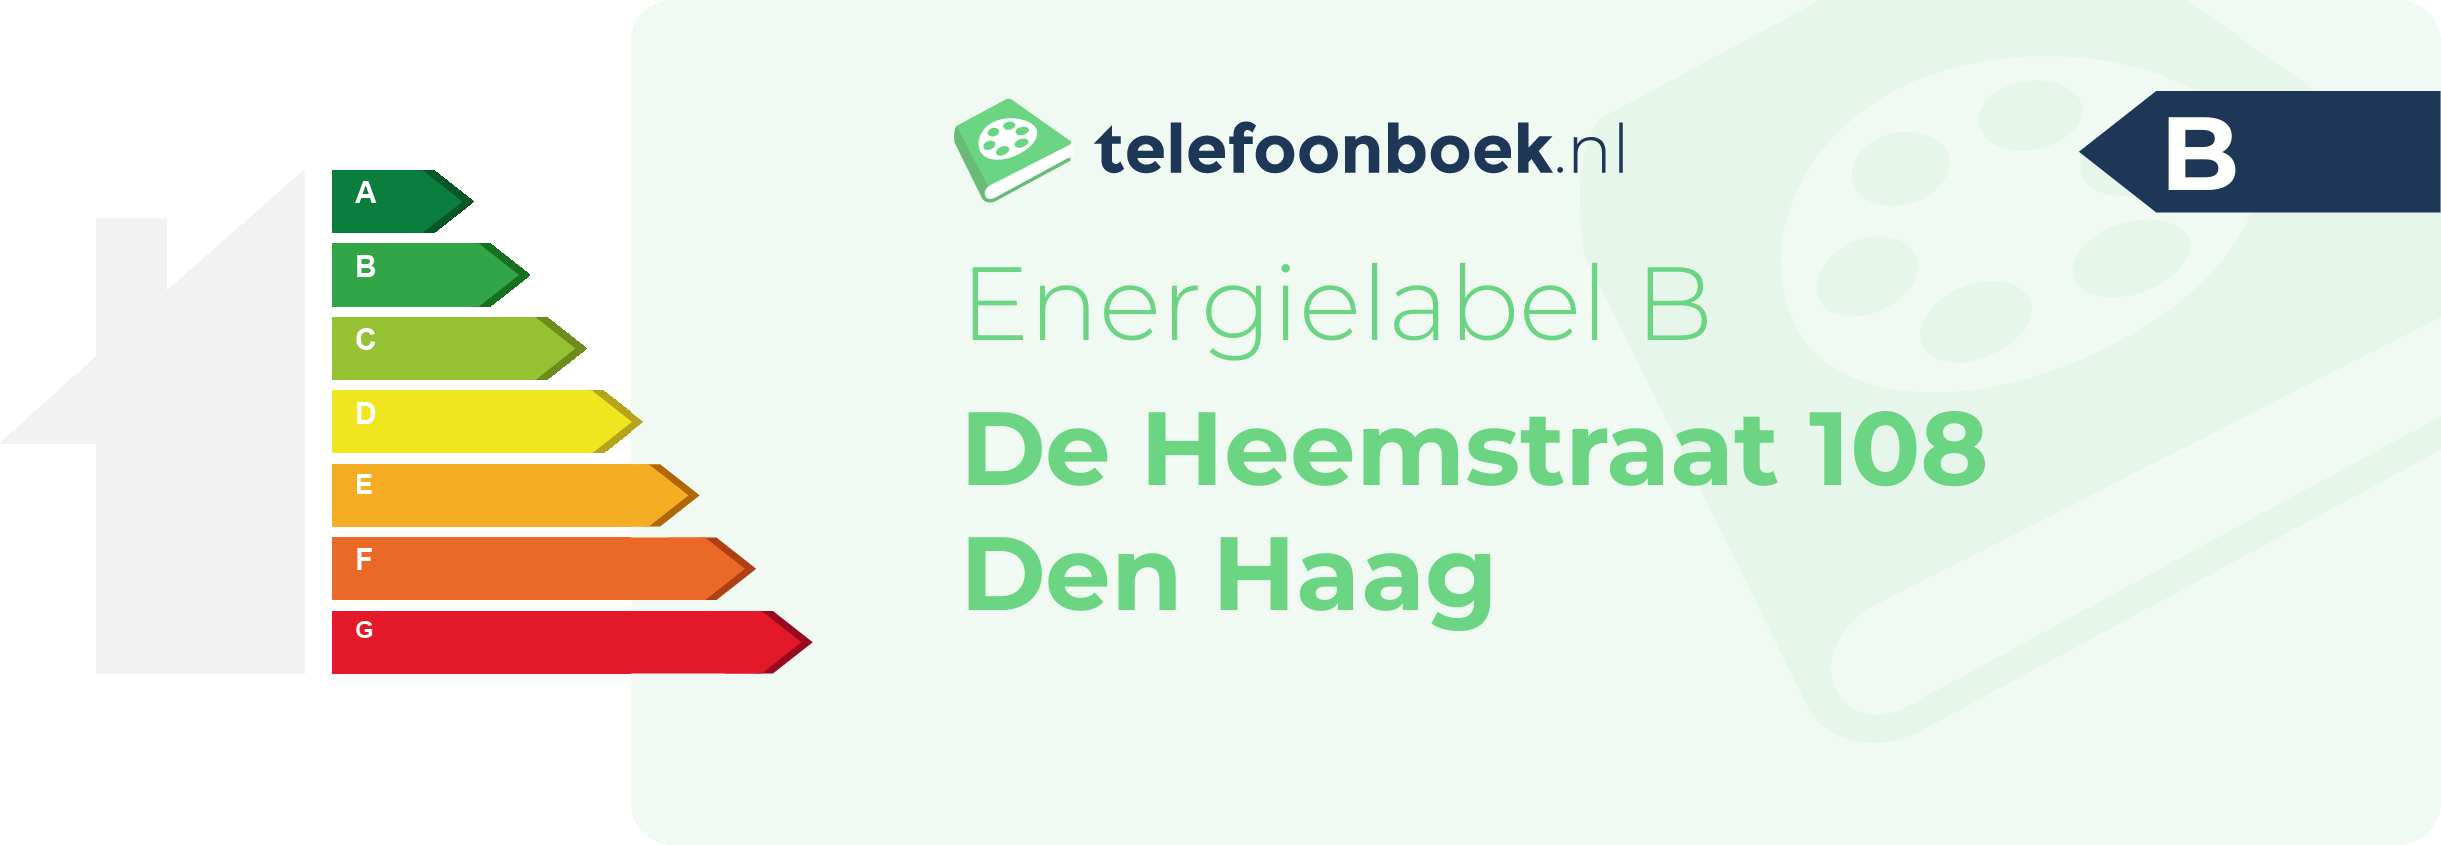 Energielabel De Heemstraat 108 Den Haag